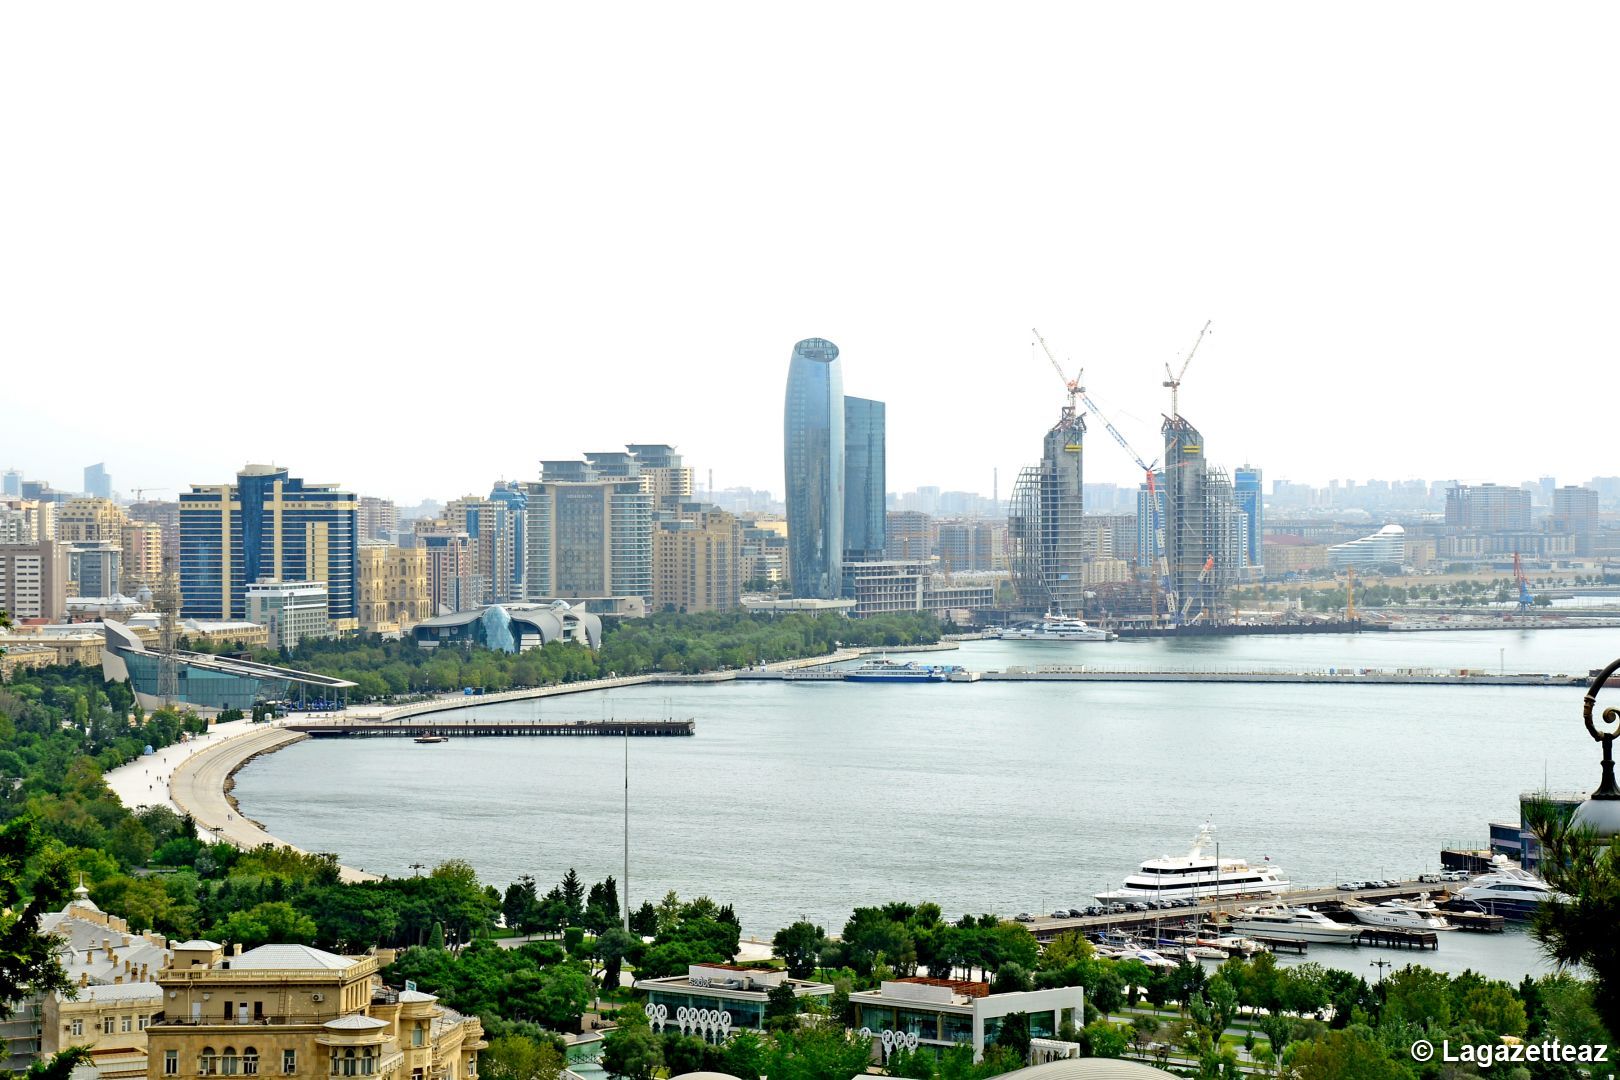 Pendant la période de propagation de la pandémie, l'Azerbaïdjan a connu une croissance dans certains secteurs de l'économie